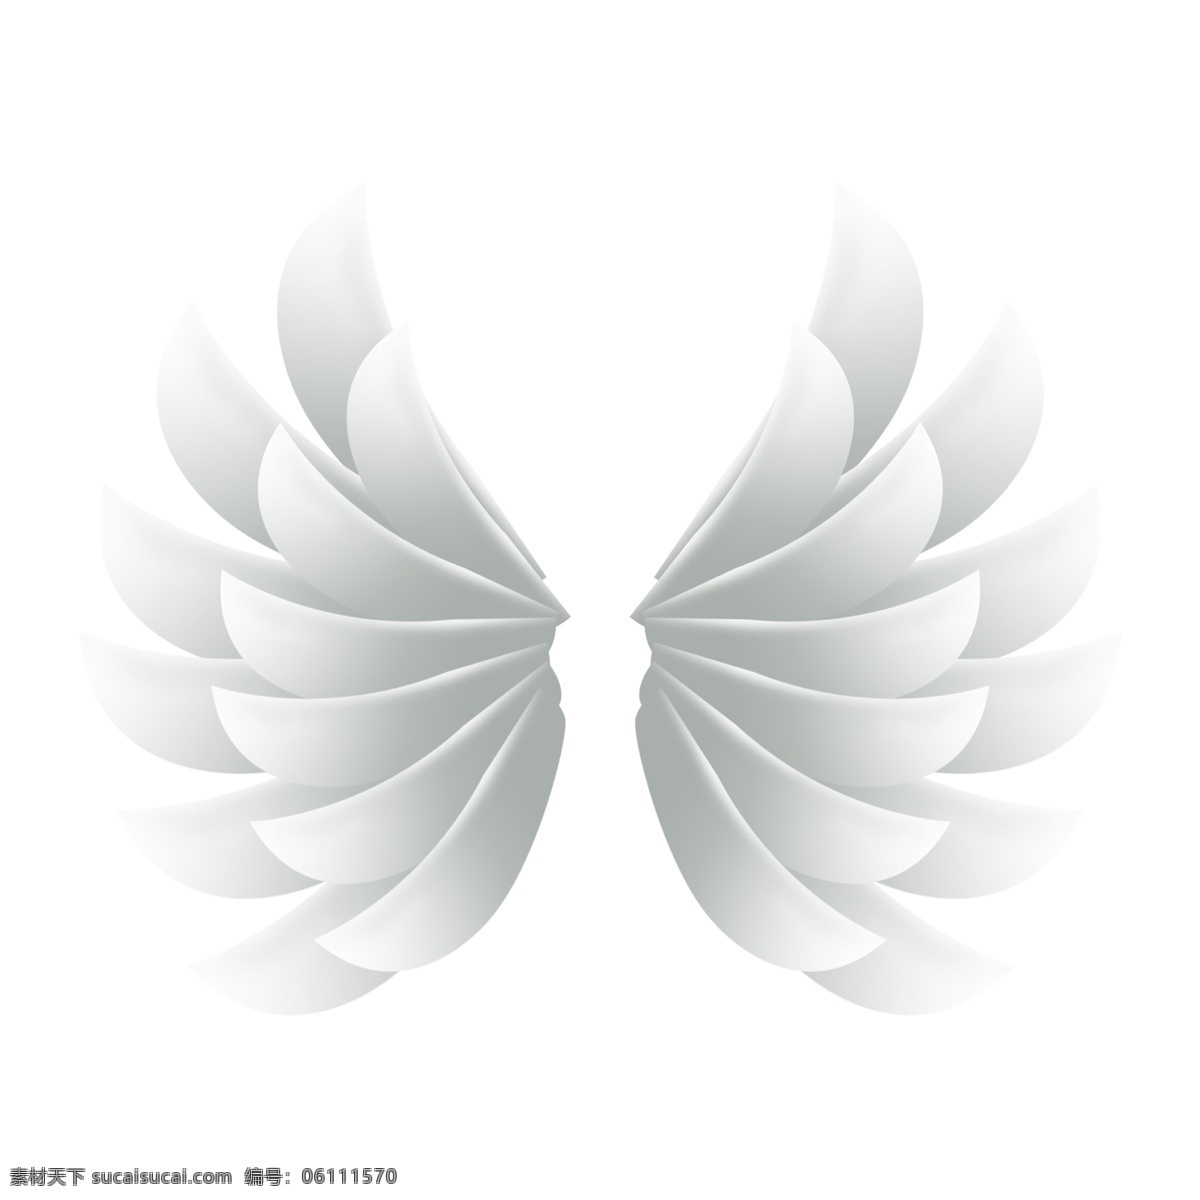 立体 白色 卡通 天使 翅膀 元素 天使的翅膀 卡通手绘 回旋 扇动 柔软 洁白 炫酷 羽毛 羽翼 翱翔 卡通插画